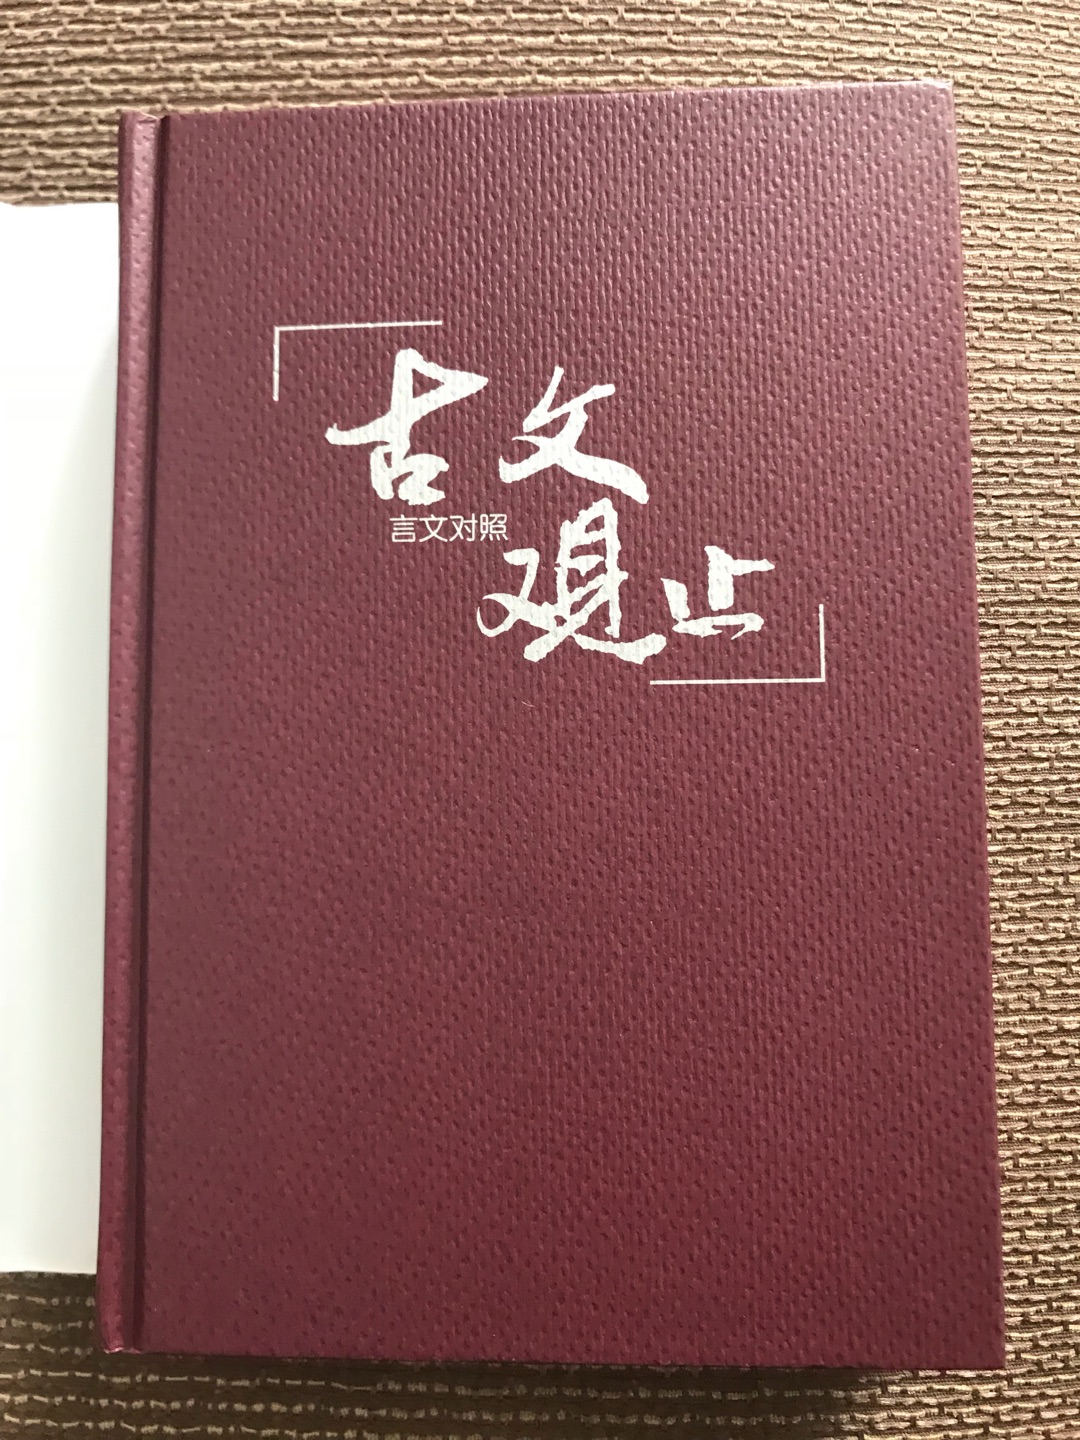 有一套中华书局的，但是听说这个版本很经典，就买来对照学习。